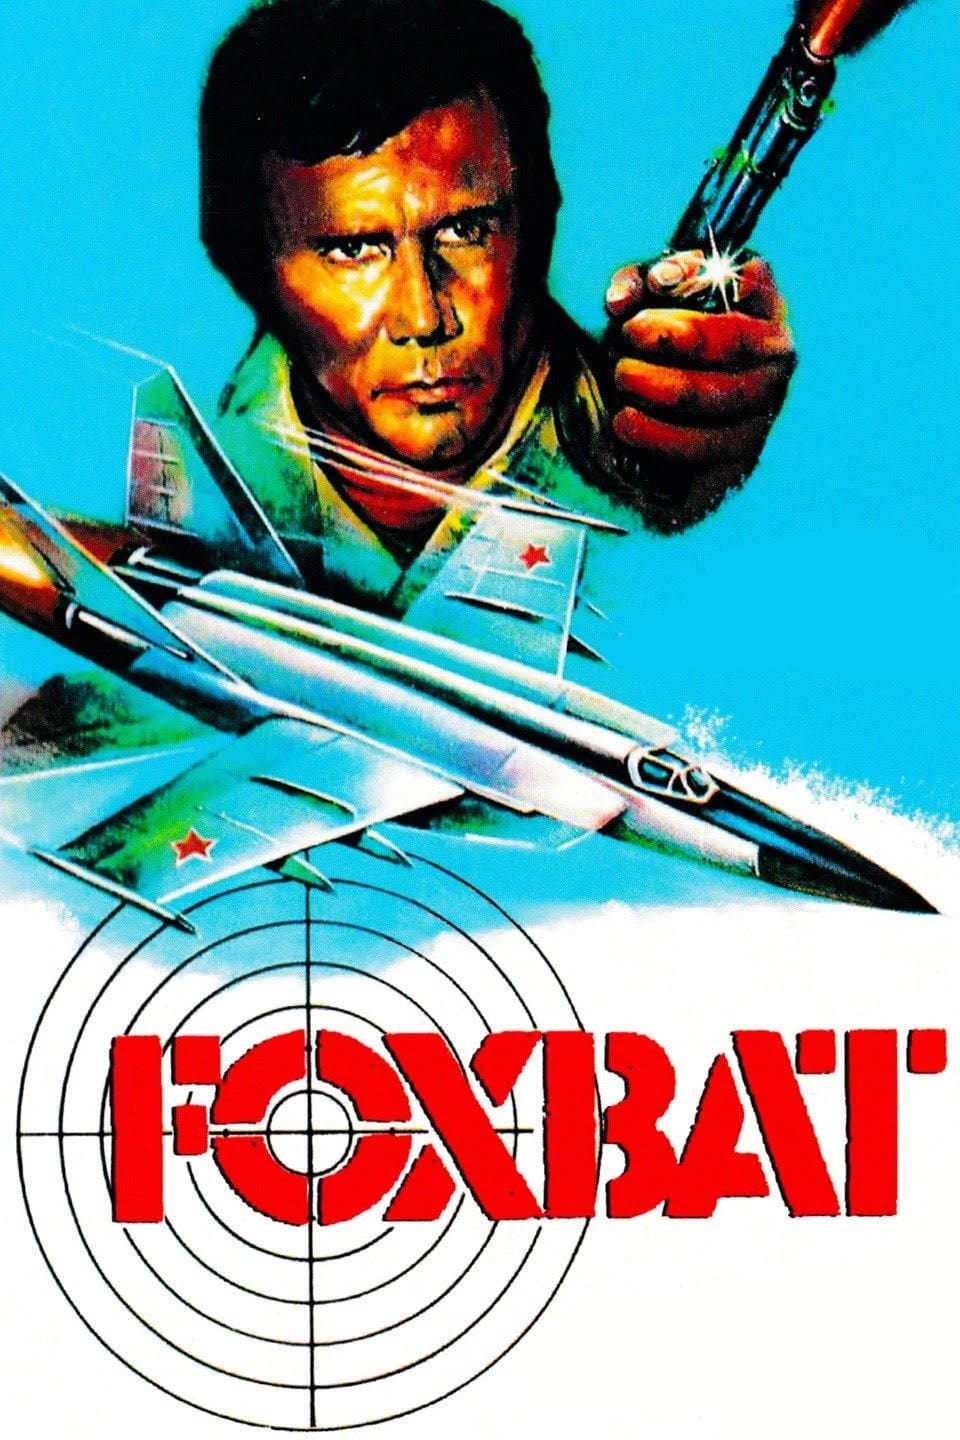 Foxbat (1977)